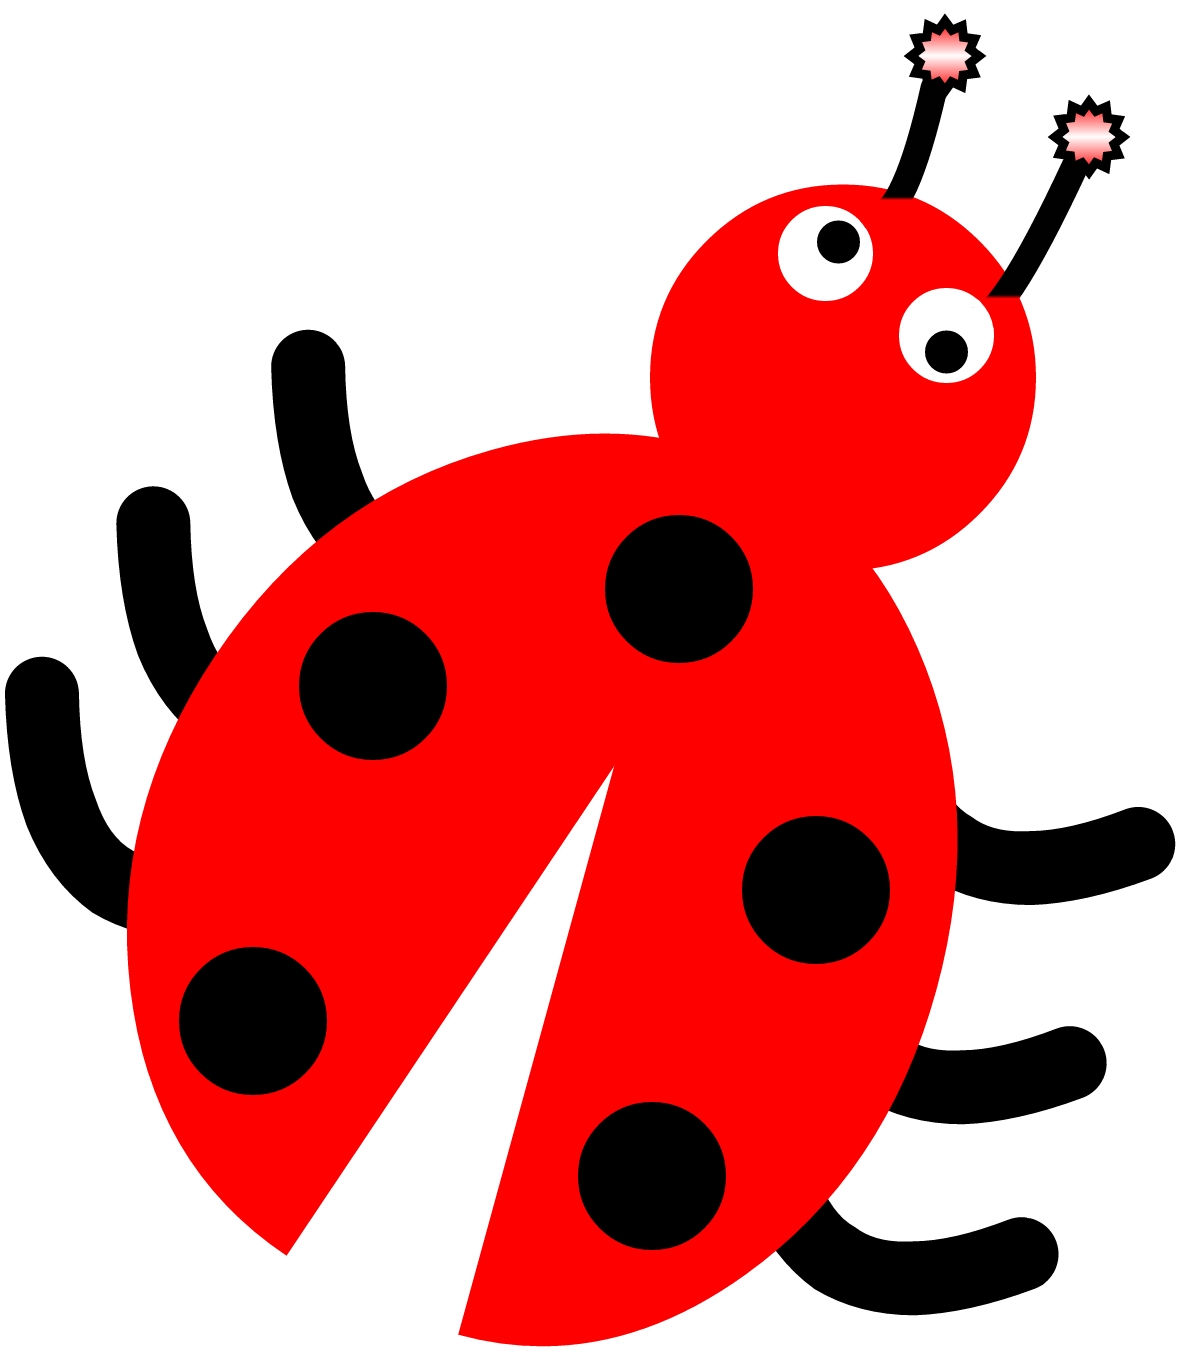 Ladybug, Ladybug a short rhyme by Elizabeth Wrobel